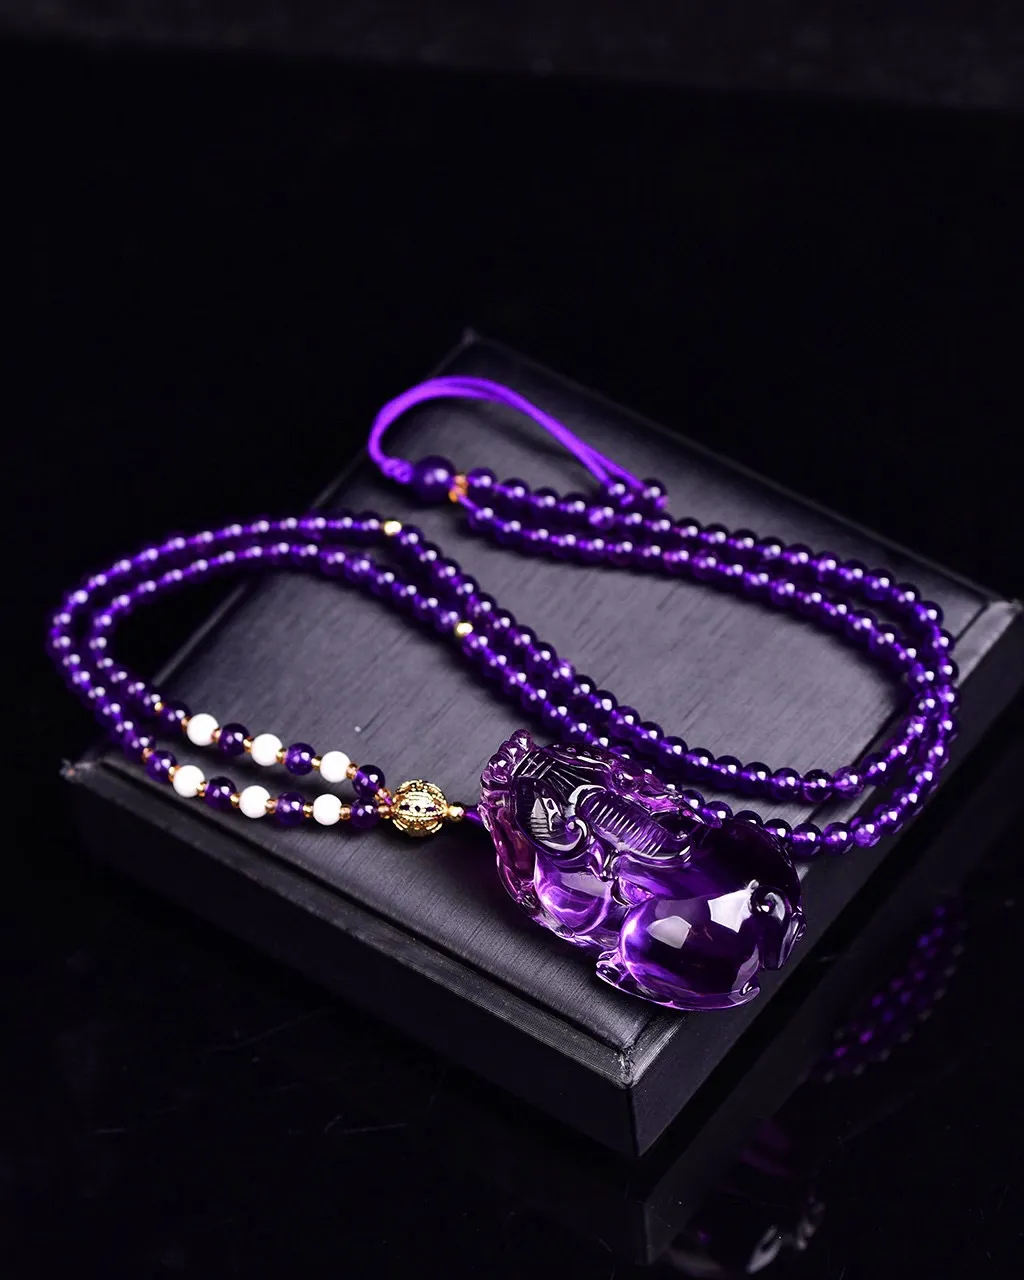 天然紫水晶貔貅吊坠紫气东来，貔貅招财进财，紫水晶..转运，顺顺利利保平安，实物非常漂亮，珠链4mm天然紫水晶 规格:39*25*16mm，重40g